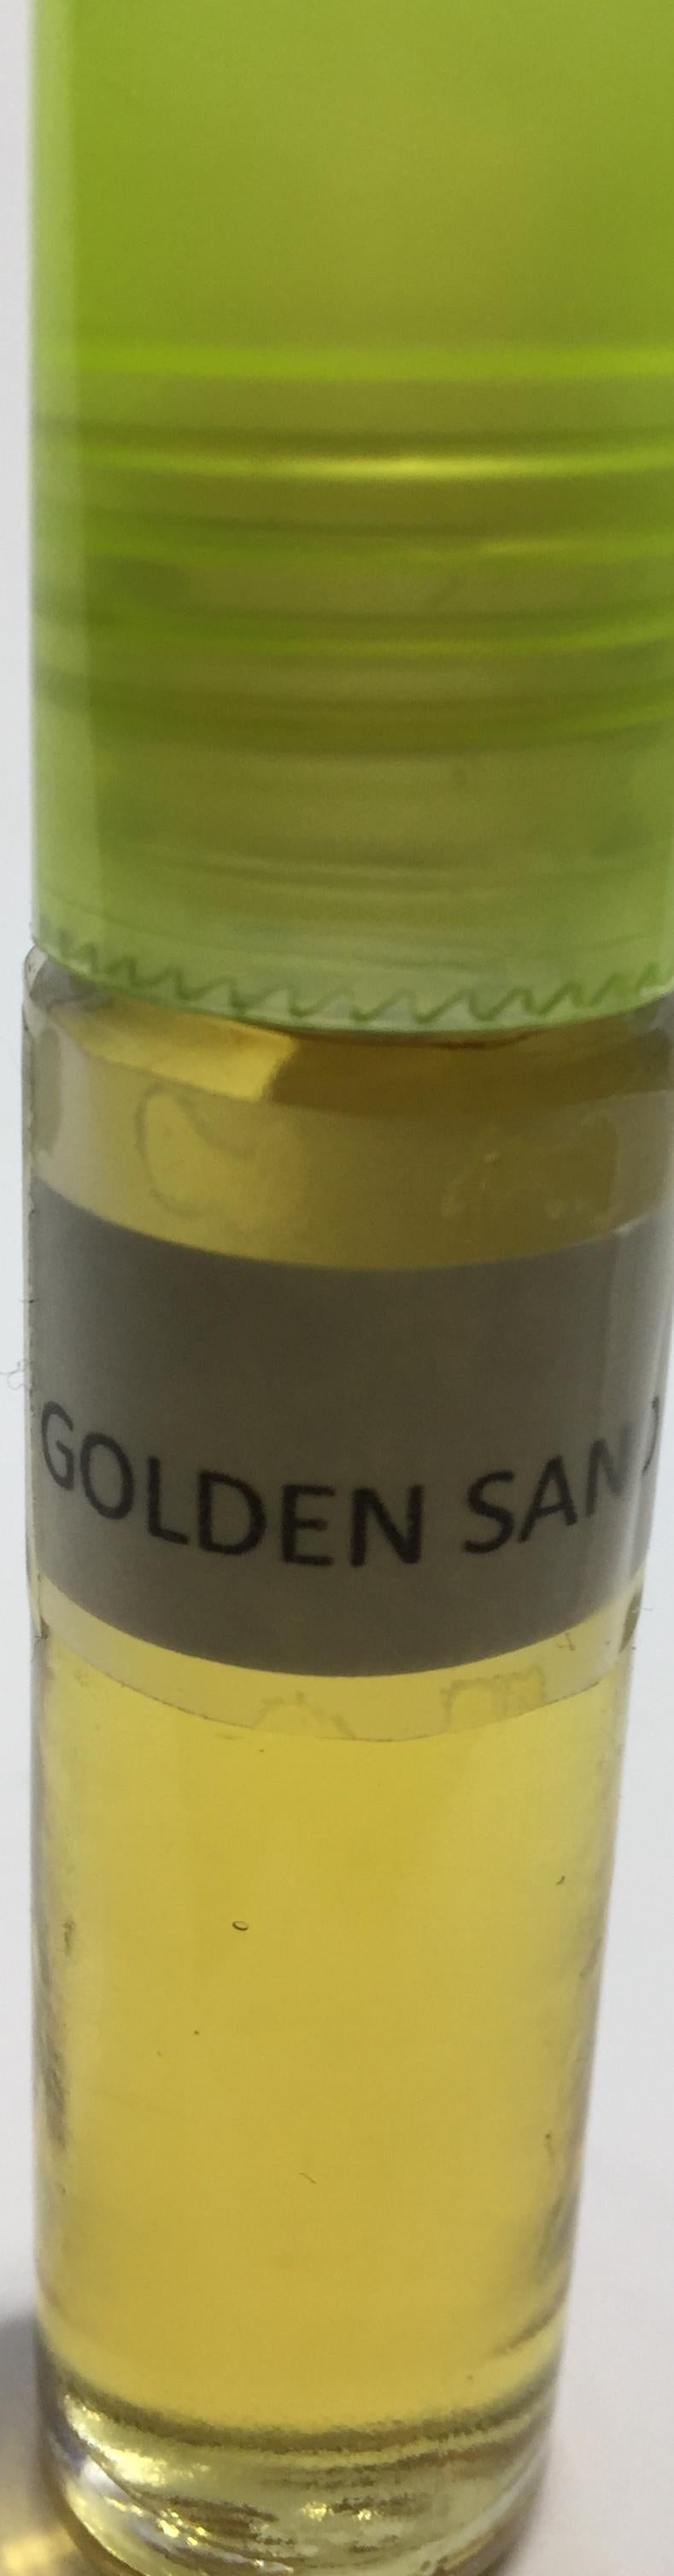 Golden Sand: Fragrance(Perfume)Body Oil Unisex